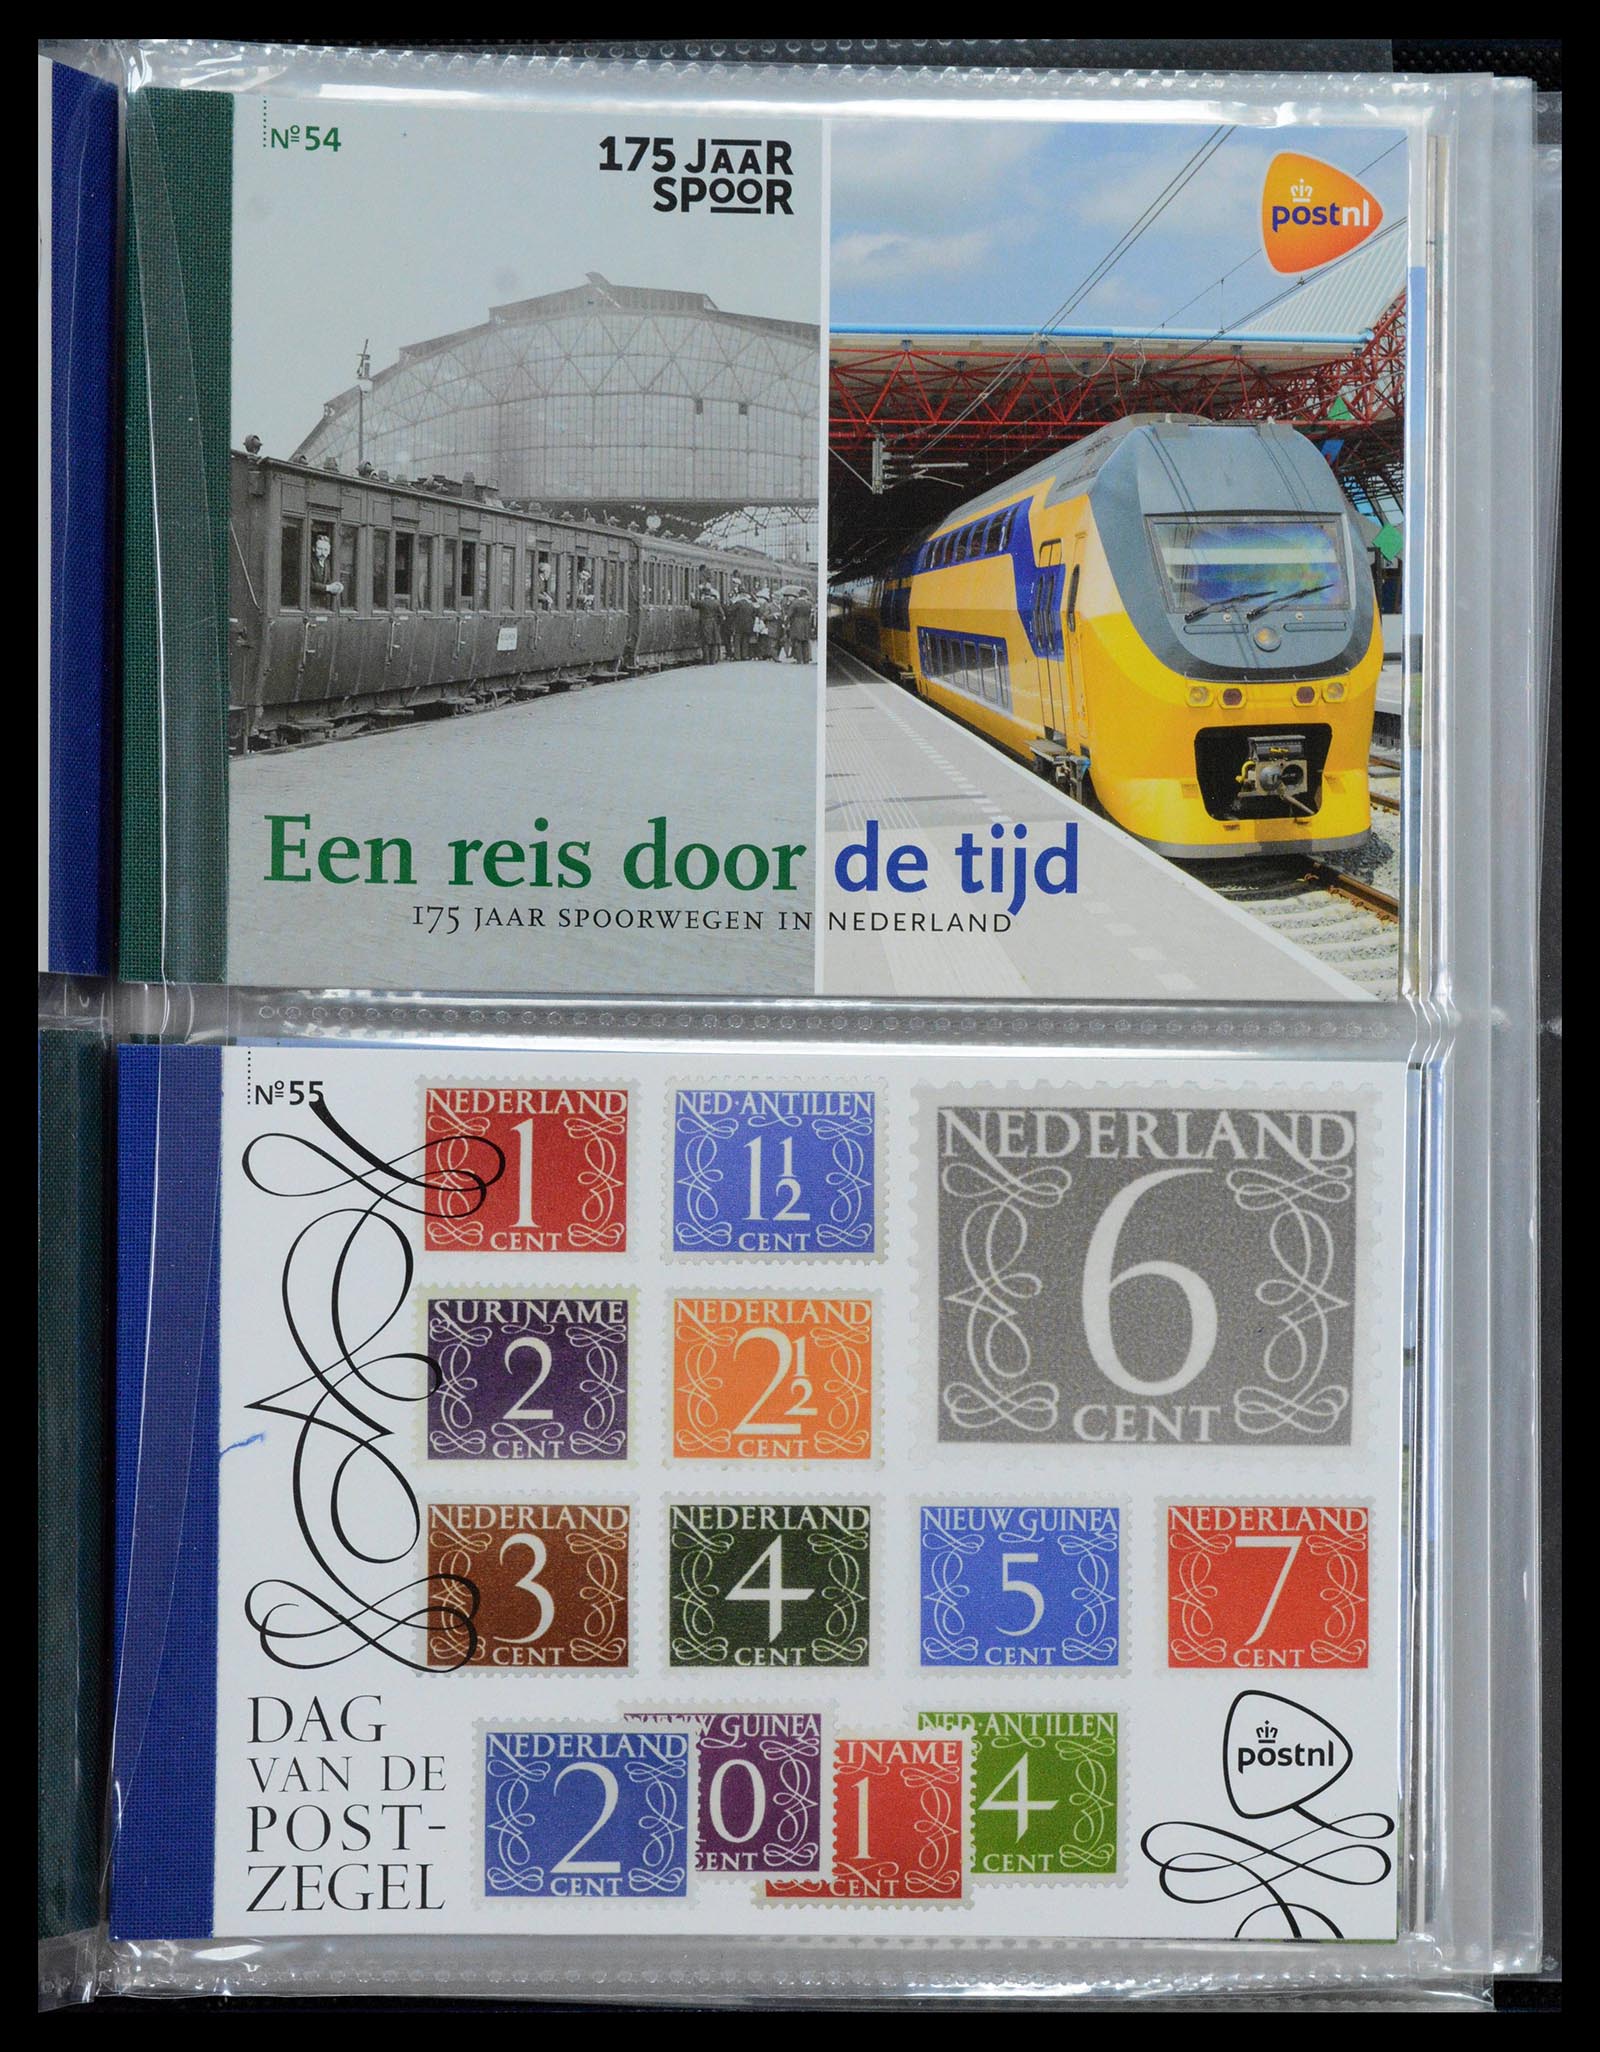 39018 0028 - Stamp collection 39018 Netherlands prestige booklets 2003-2016.